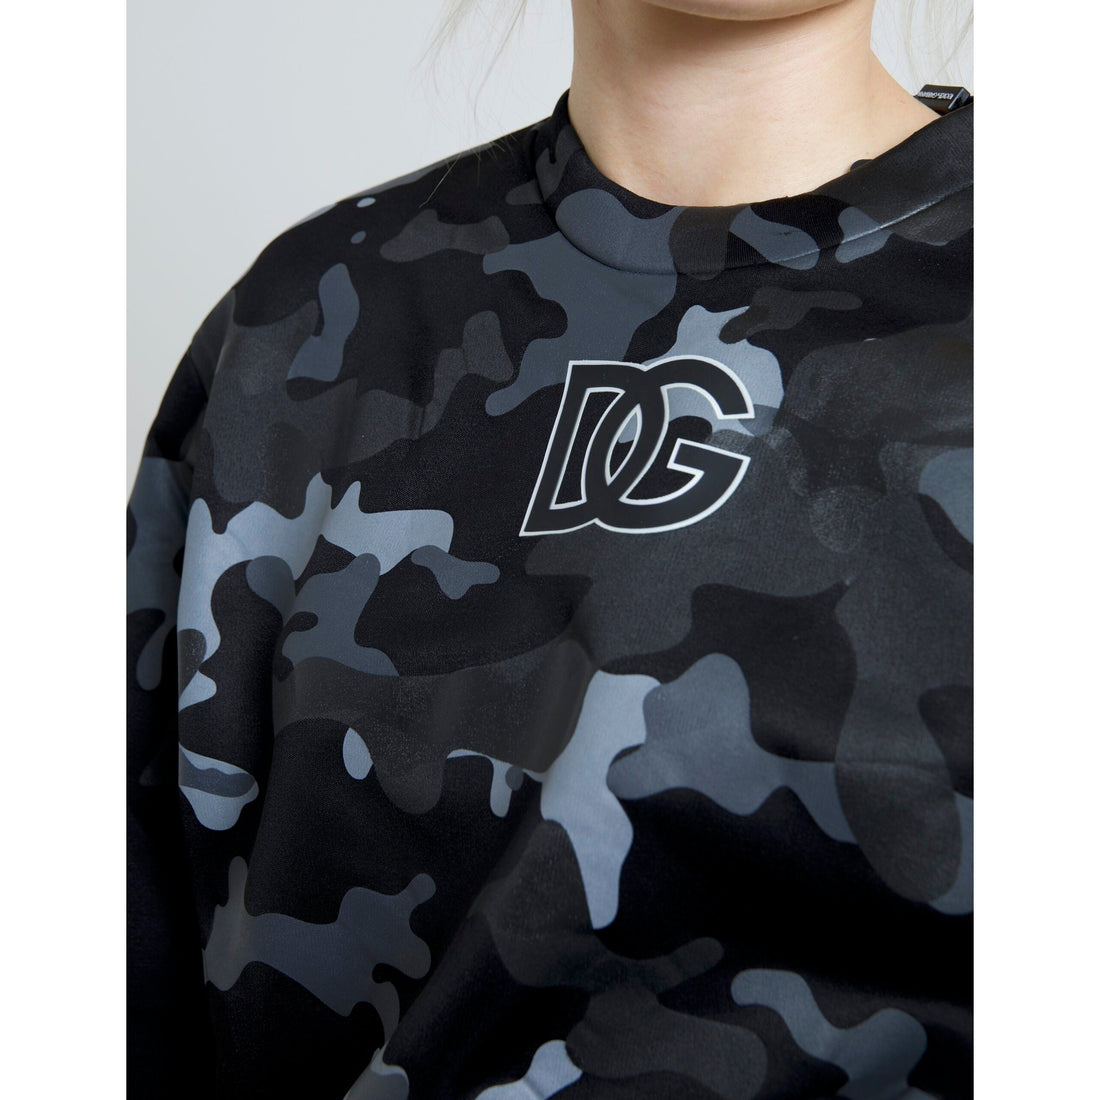 Dolce & Gabbana Black Camouflage Round Neck Sweatshirt Sweater